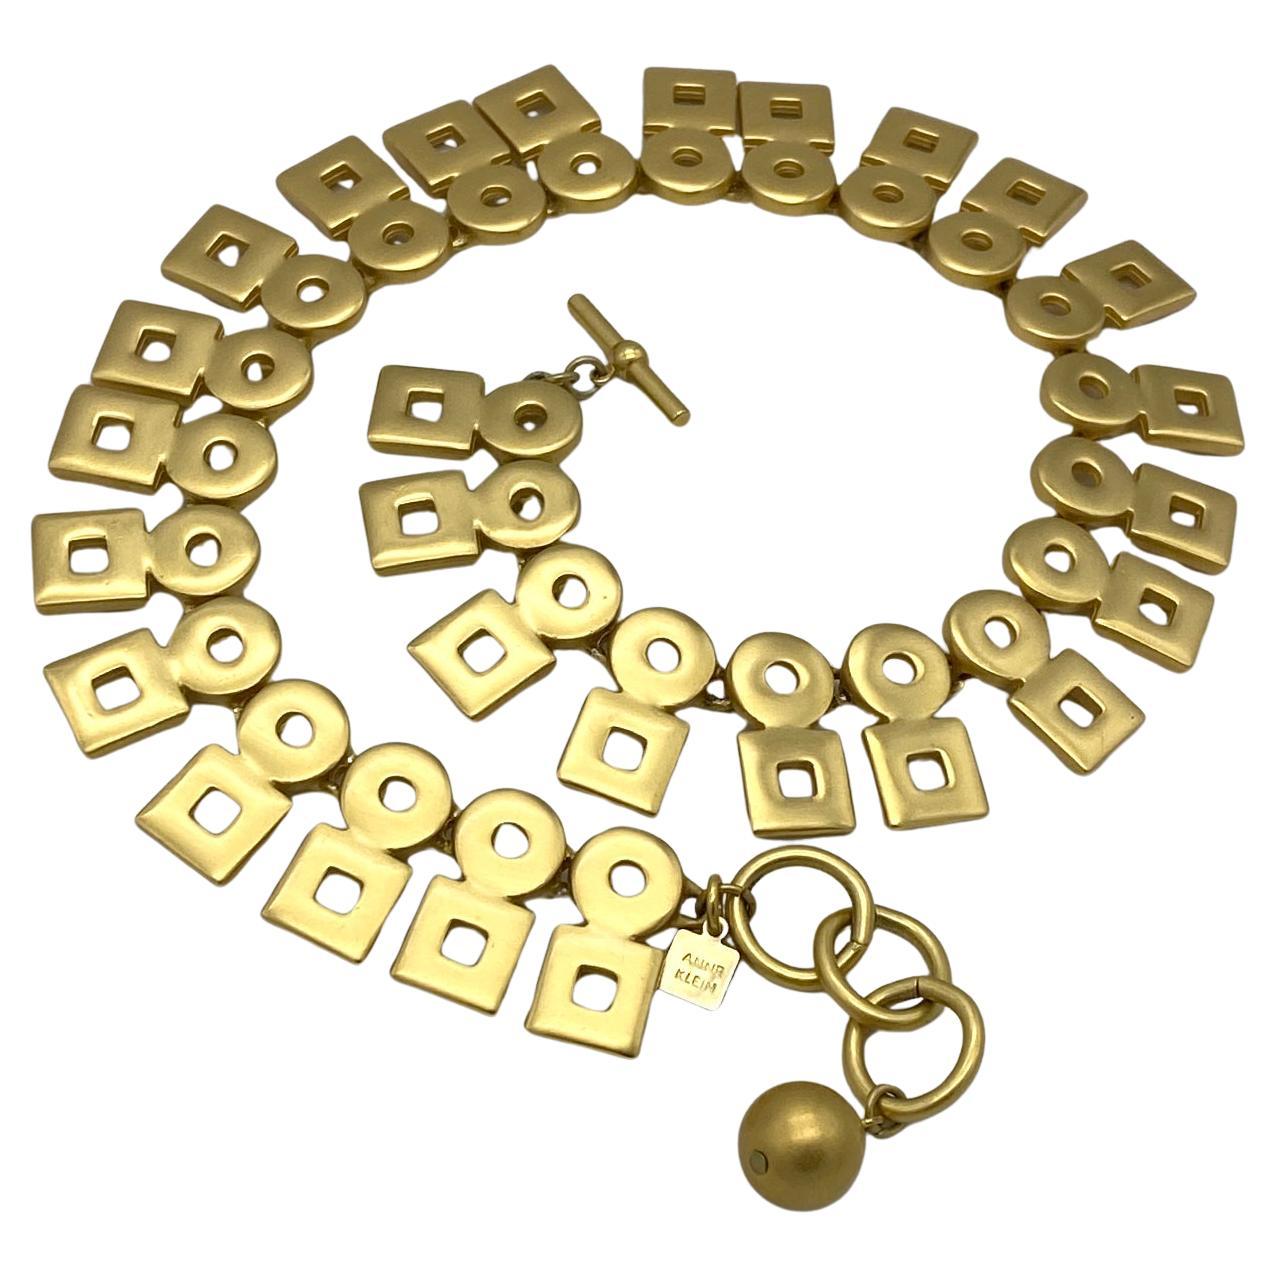 Dieses Collier aus russischem Gold von Anne Klein aus den 1990er Jahren besteht aus modernen kreisförmigen und quadratischen Elementen. Es hat einen Knebel an einem Ende und drei Ringe am anderen Ende zur Längeneinstellung.

Unsere